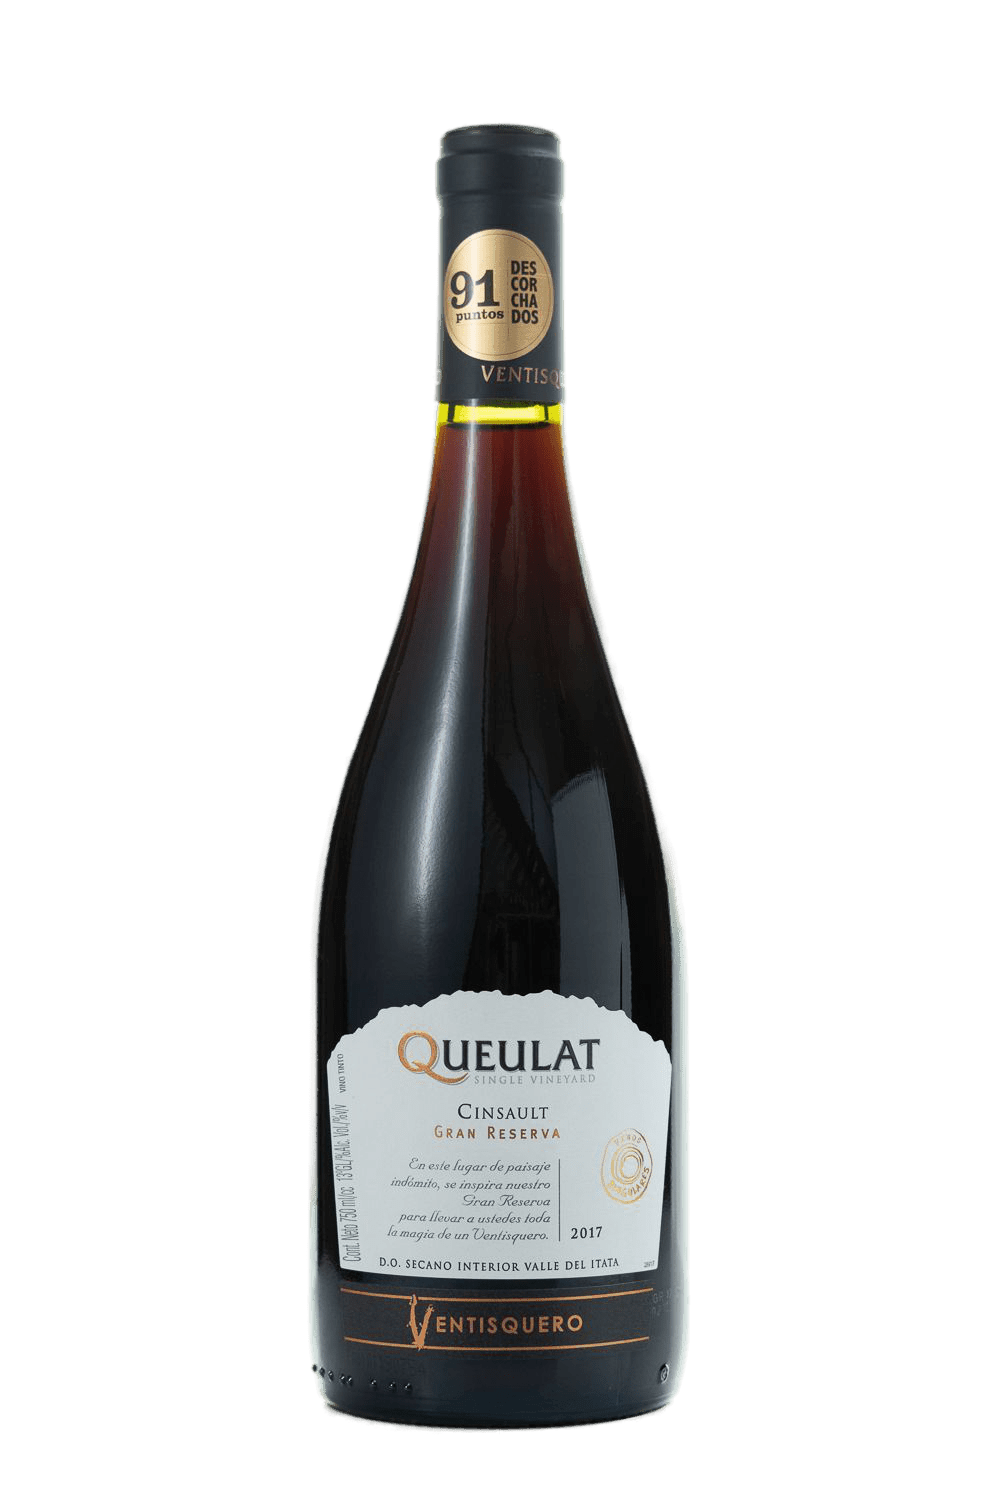 Ventisquero Queulat - Gran Reserva Cinsault 2017 - The Blend Wines